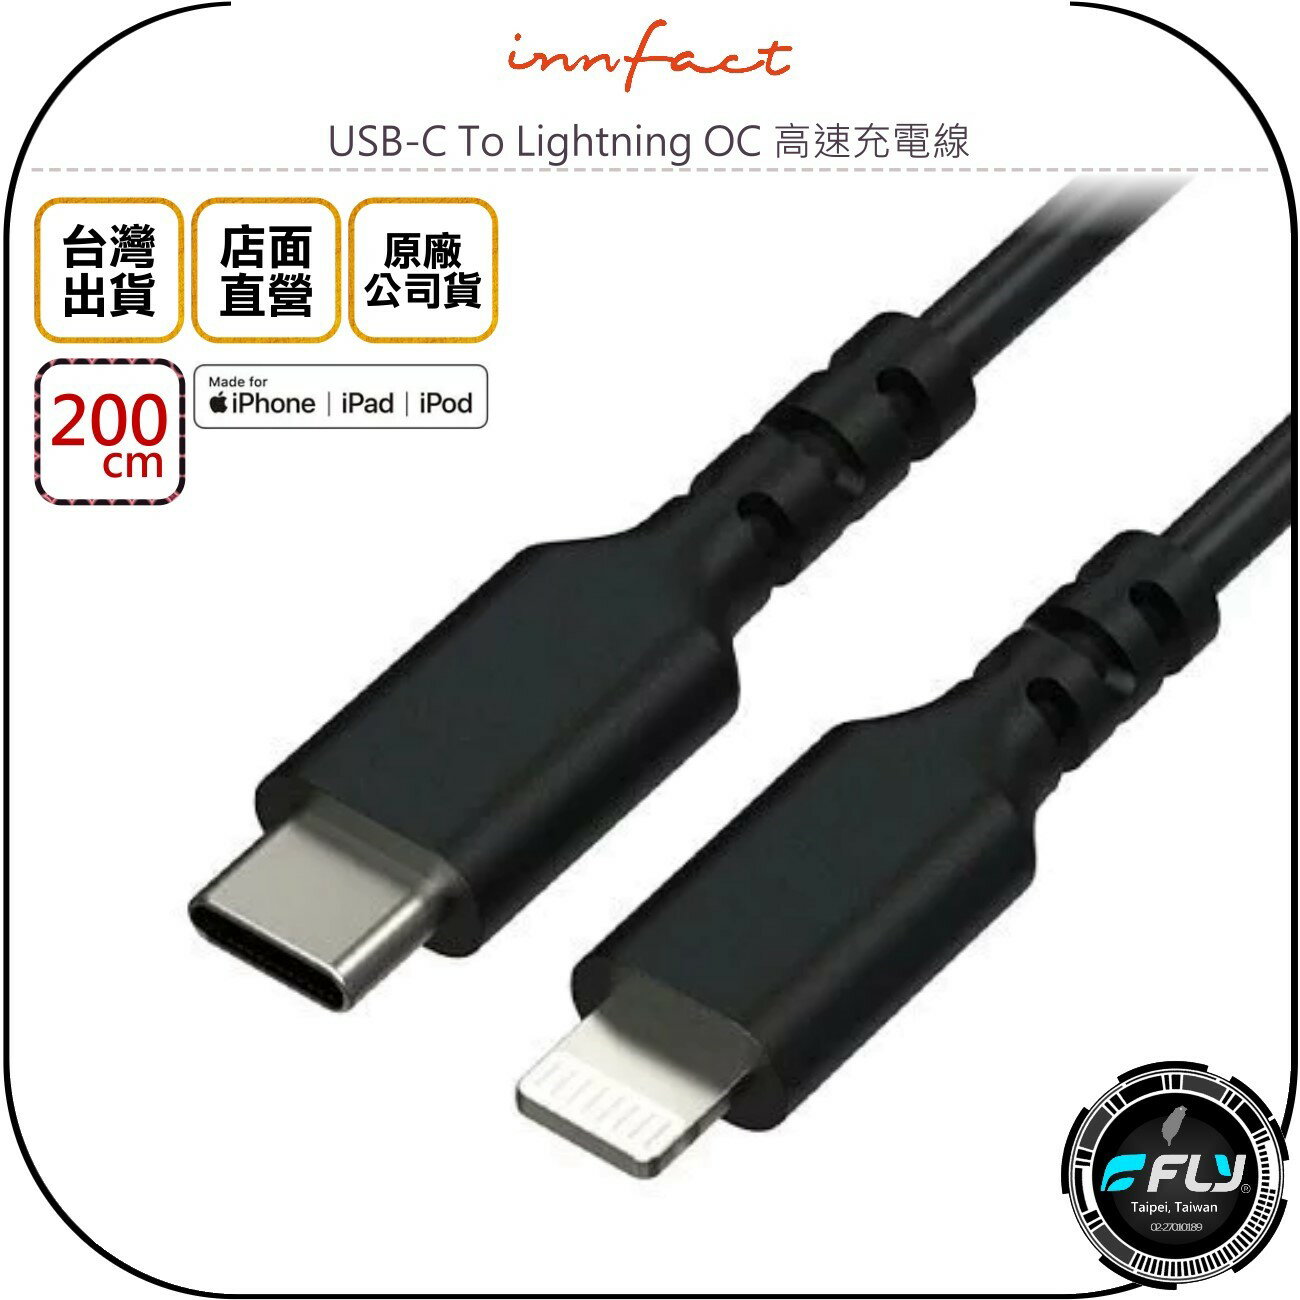 《飛翔無線3C》Innfact USB-C To Lightning OC 高速充電線 200cm◉TYPE-C充蘋果